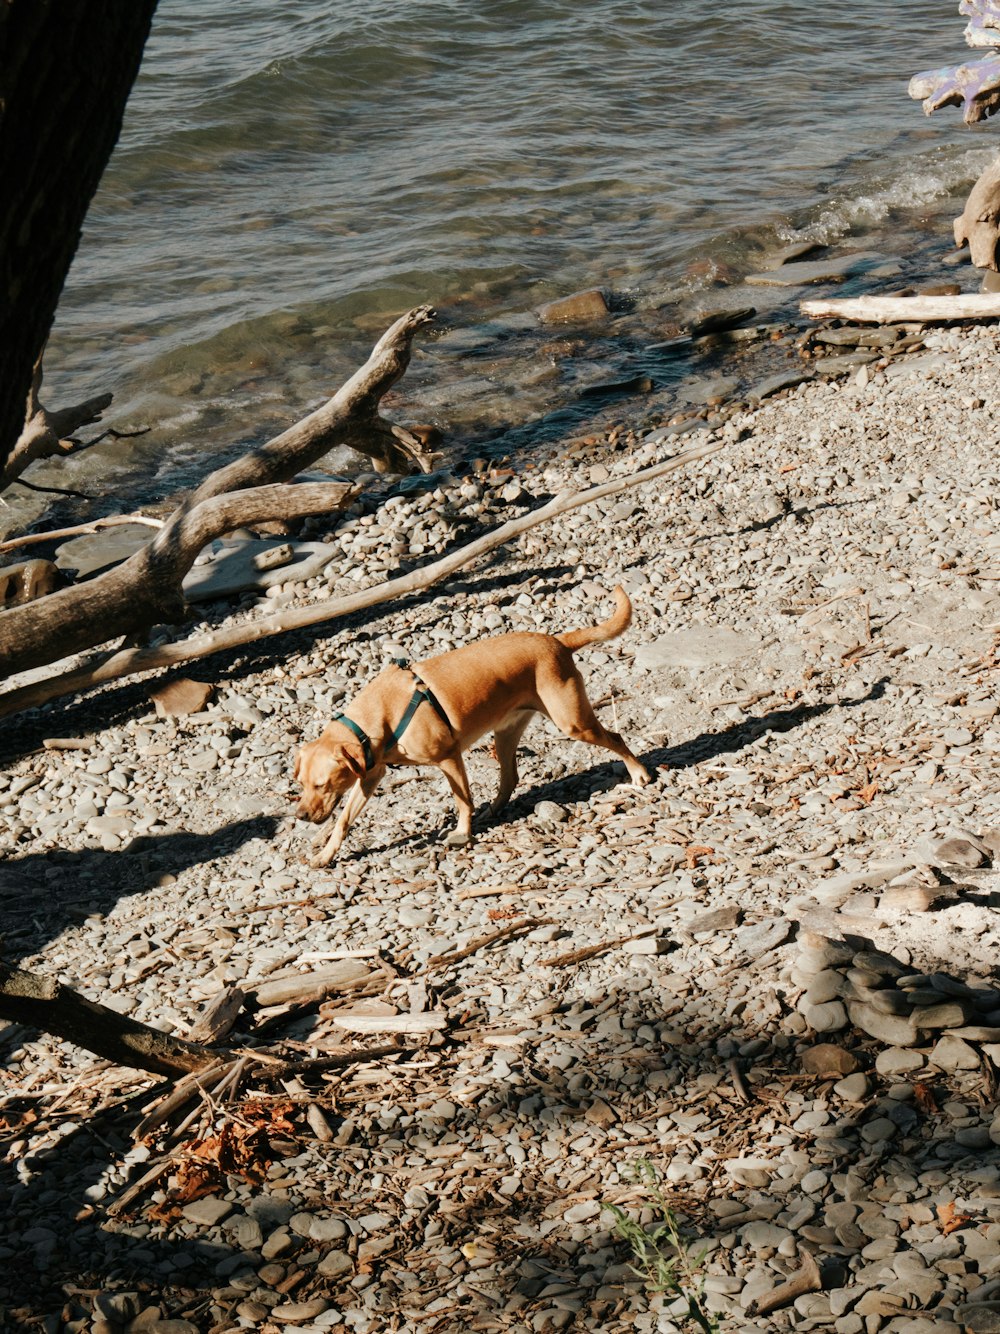 a dog on a rocky beach